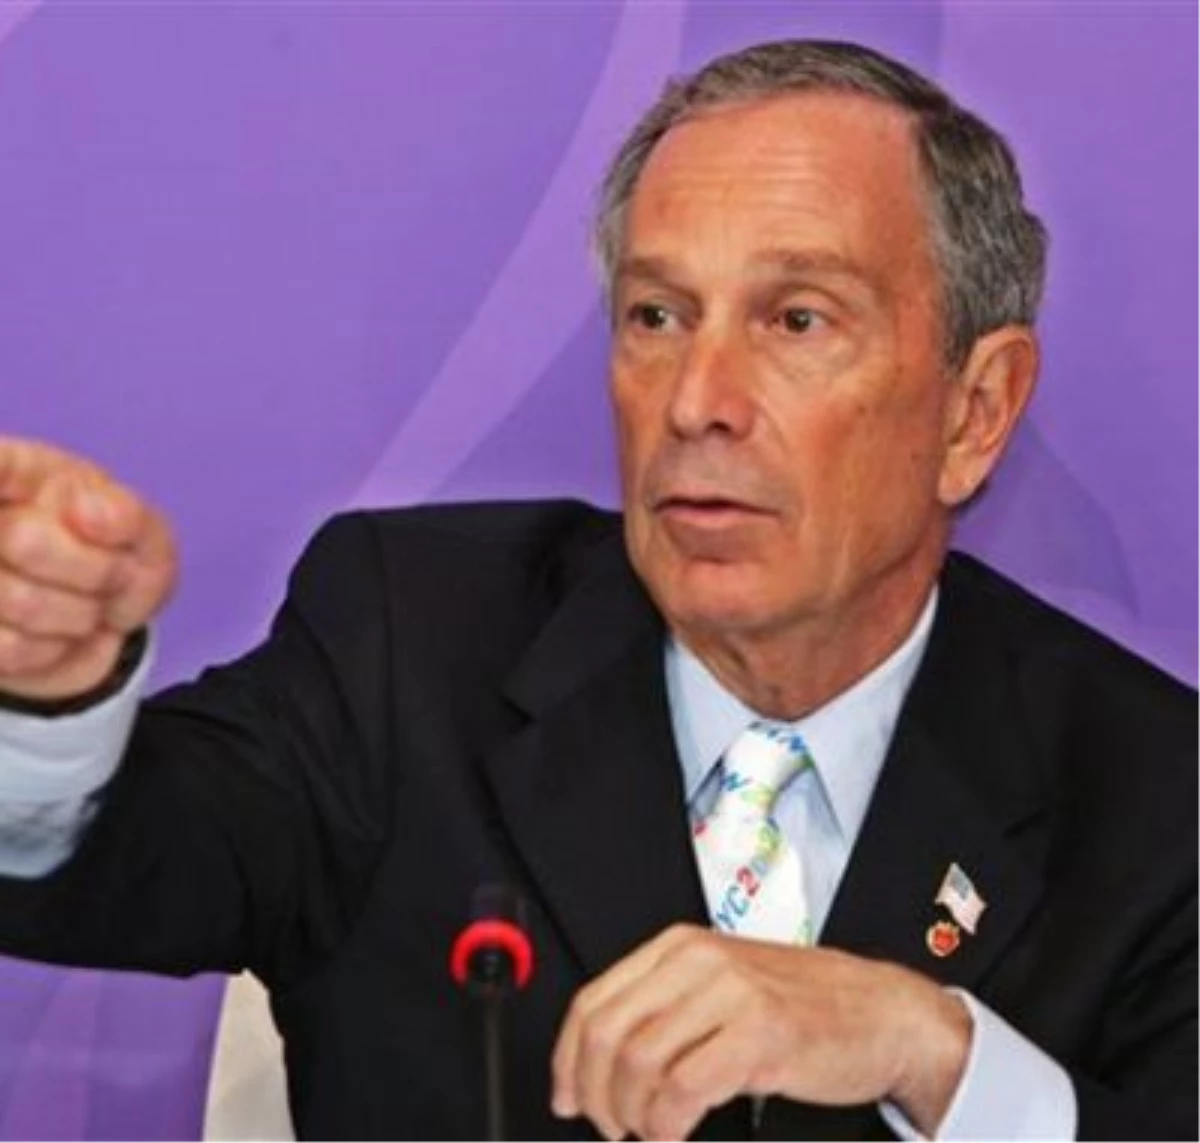 New York Belediye Başkanı Bloomberg: "Parklardan Uzak Durun"